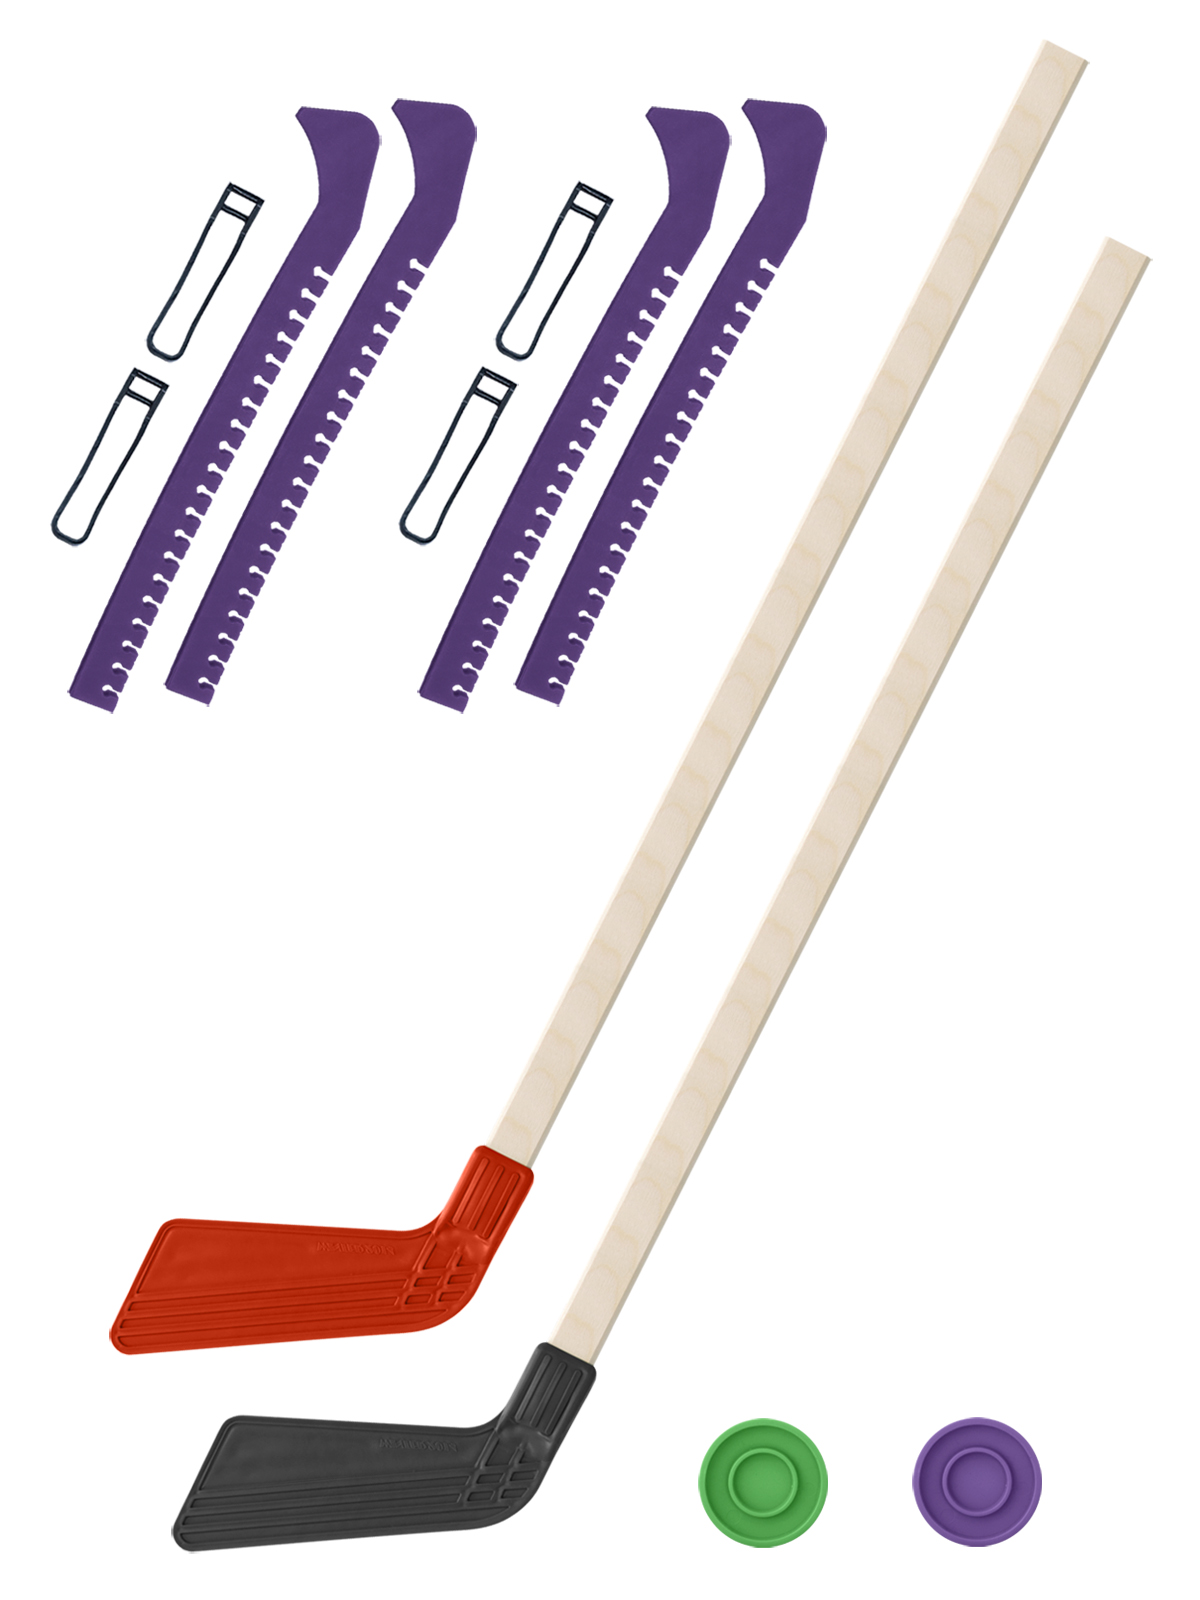 фото Клюшка хоккейная задира-плюс 2 шт красная и чер.+2 шайбы + чехлы для коньков фиолет. 2 шт.